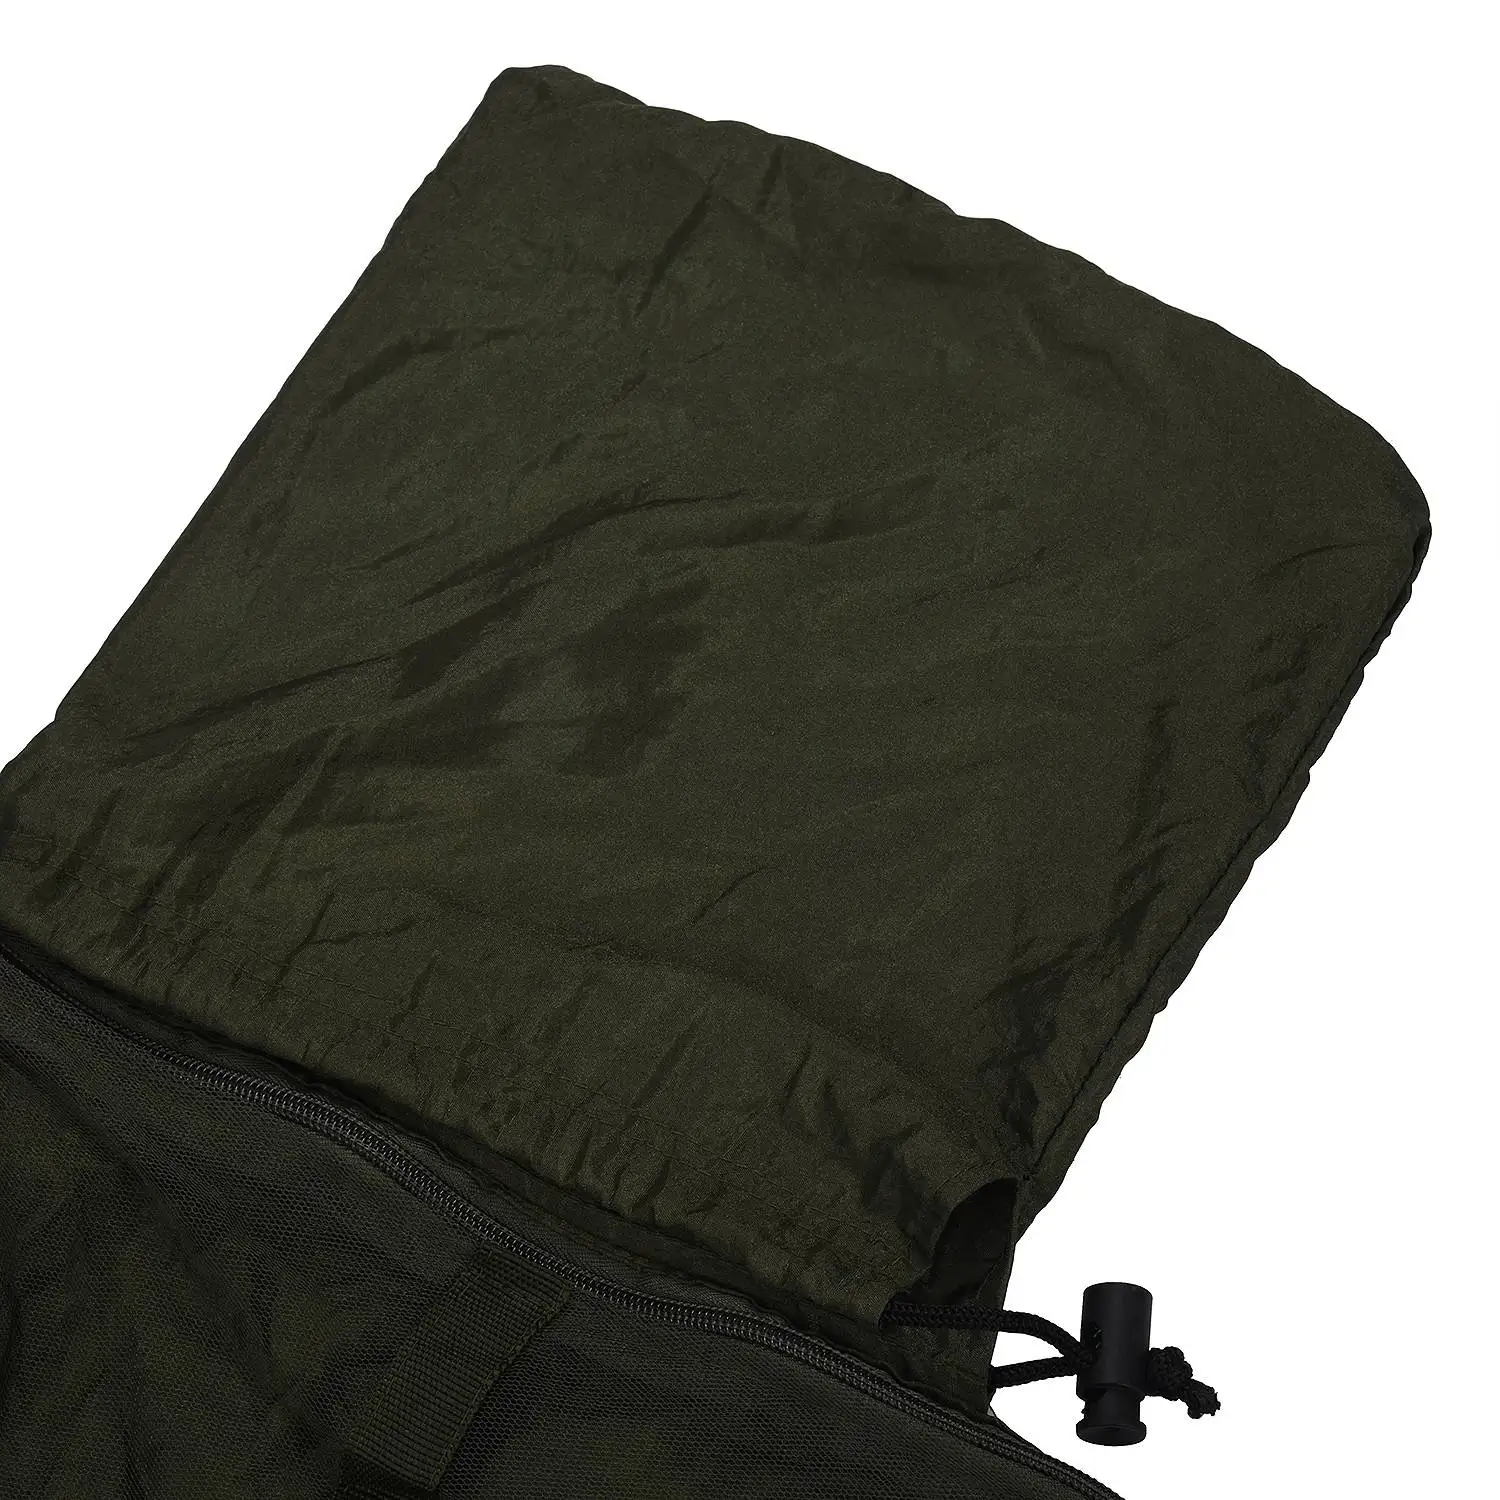 Гамак для двух человек, для путешествий отдыха на природе кемпинга палатки гамак кровать с противомоскитной сеткой